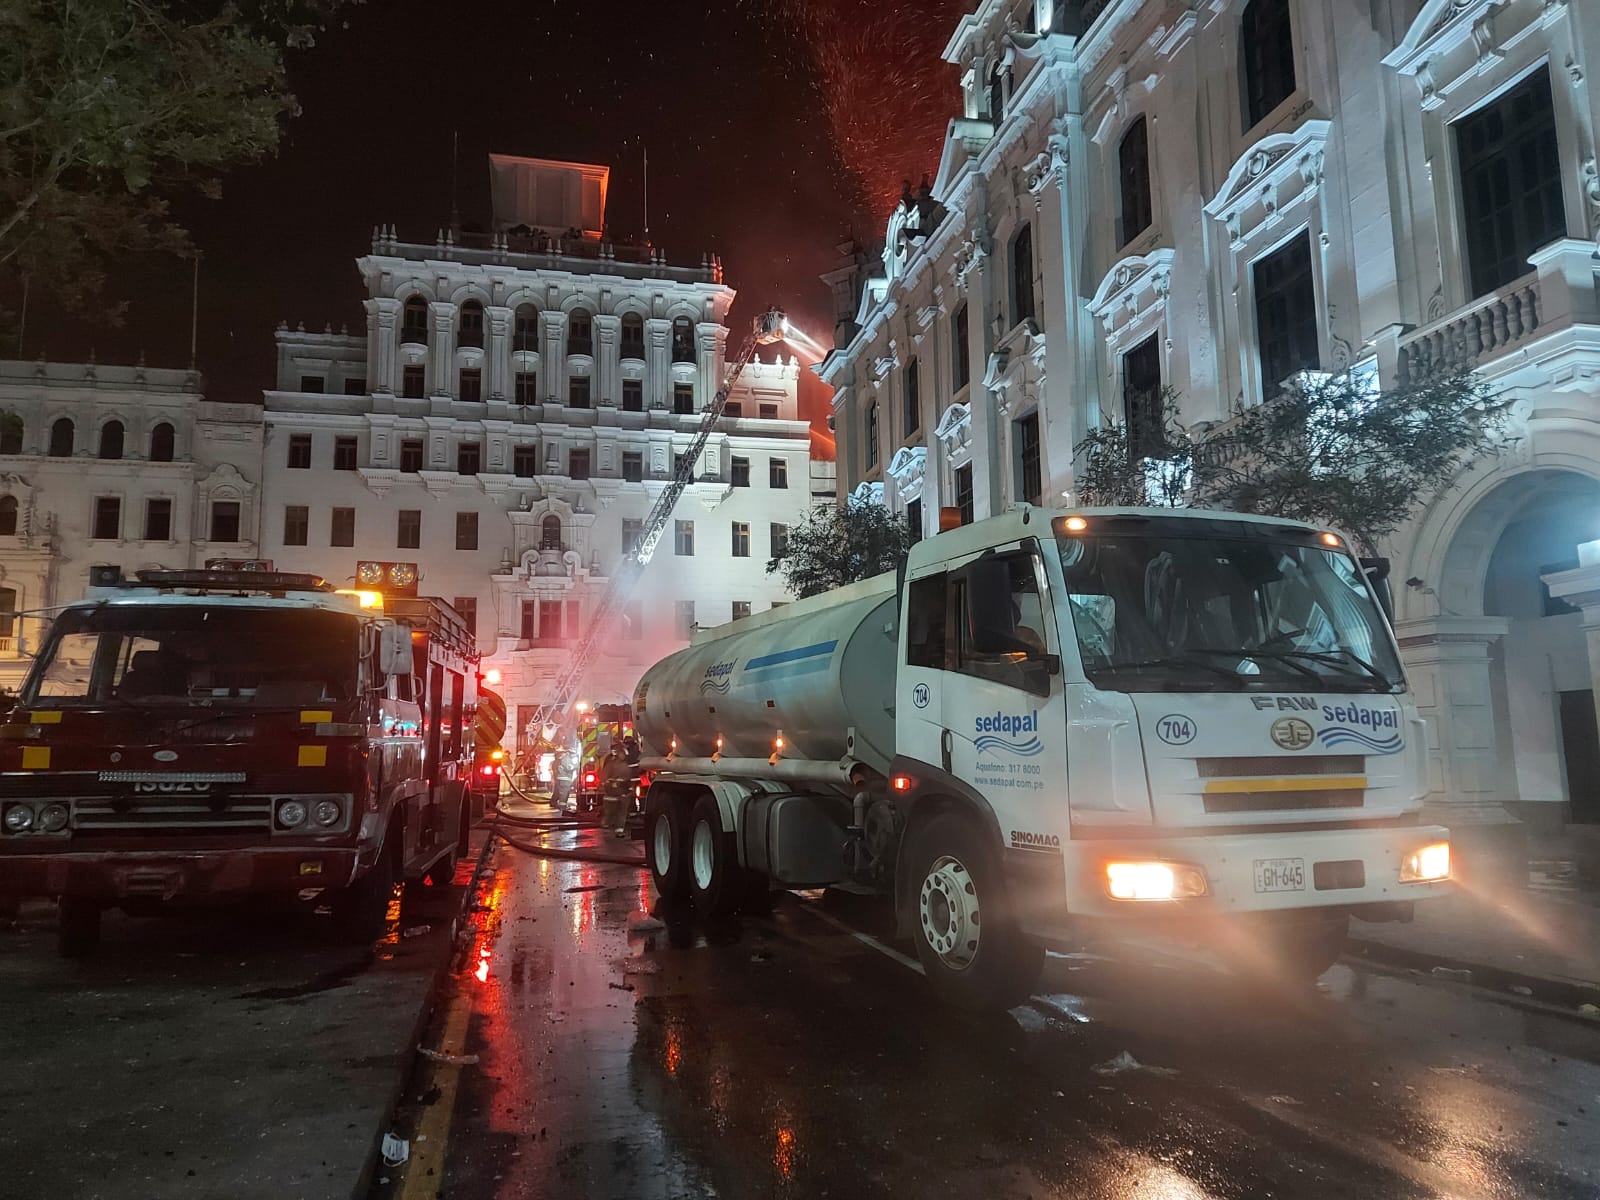 Cisternas de Sedapal llegaron a Plaza San Martín para apoyar en la contención de incendio en casona.